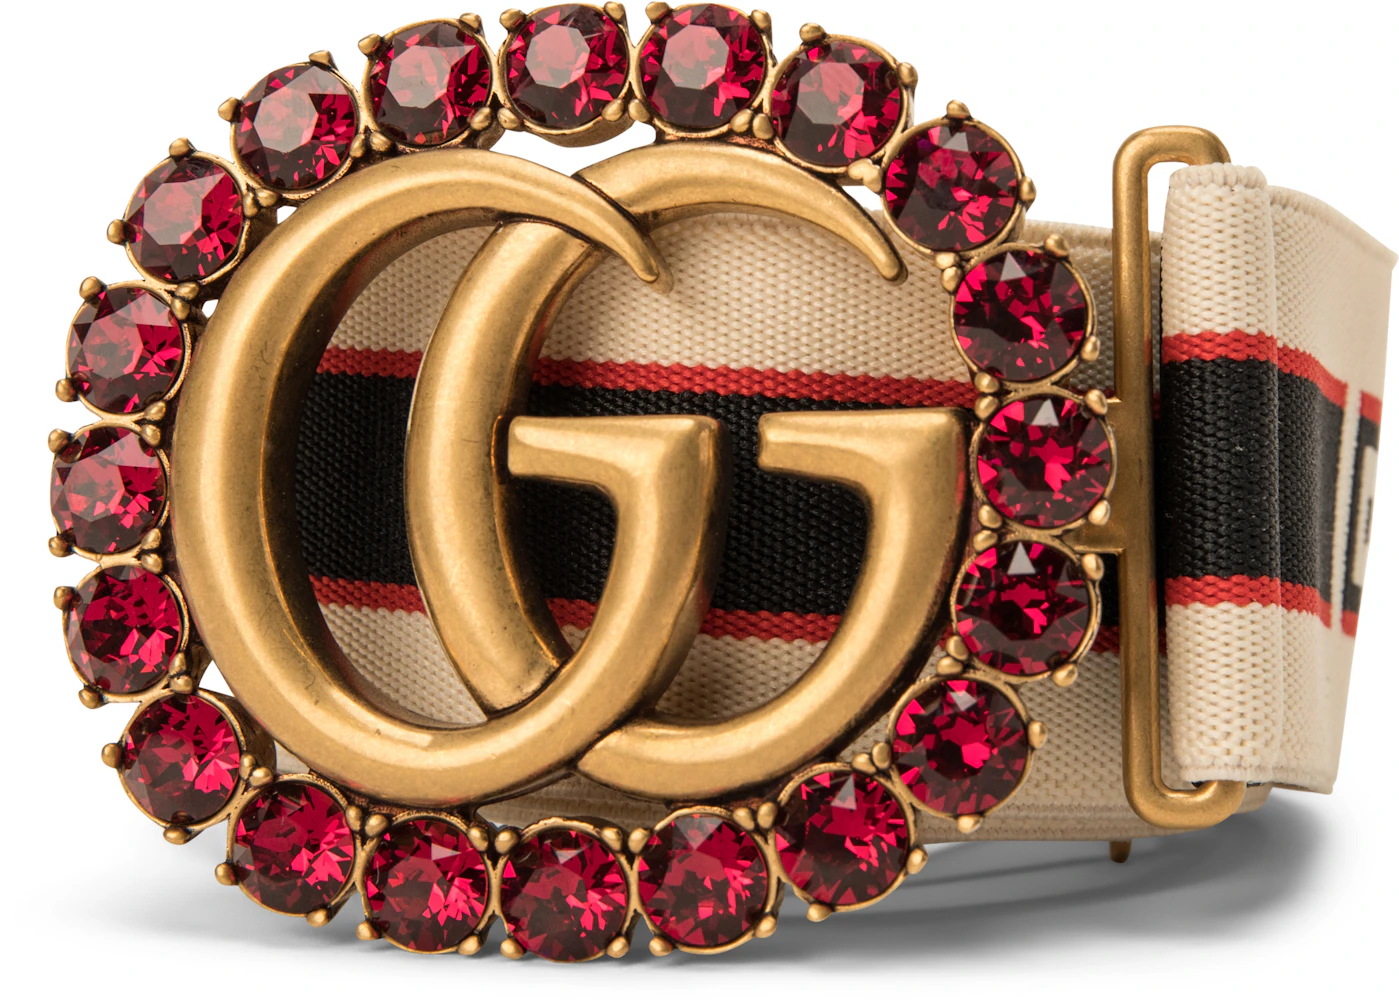 Red and Gold G Designer Belt- Order Wholesale